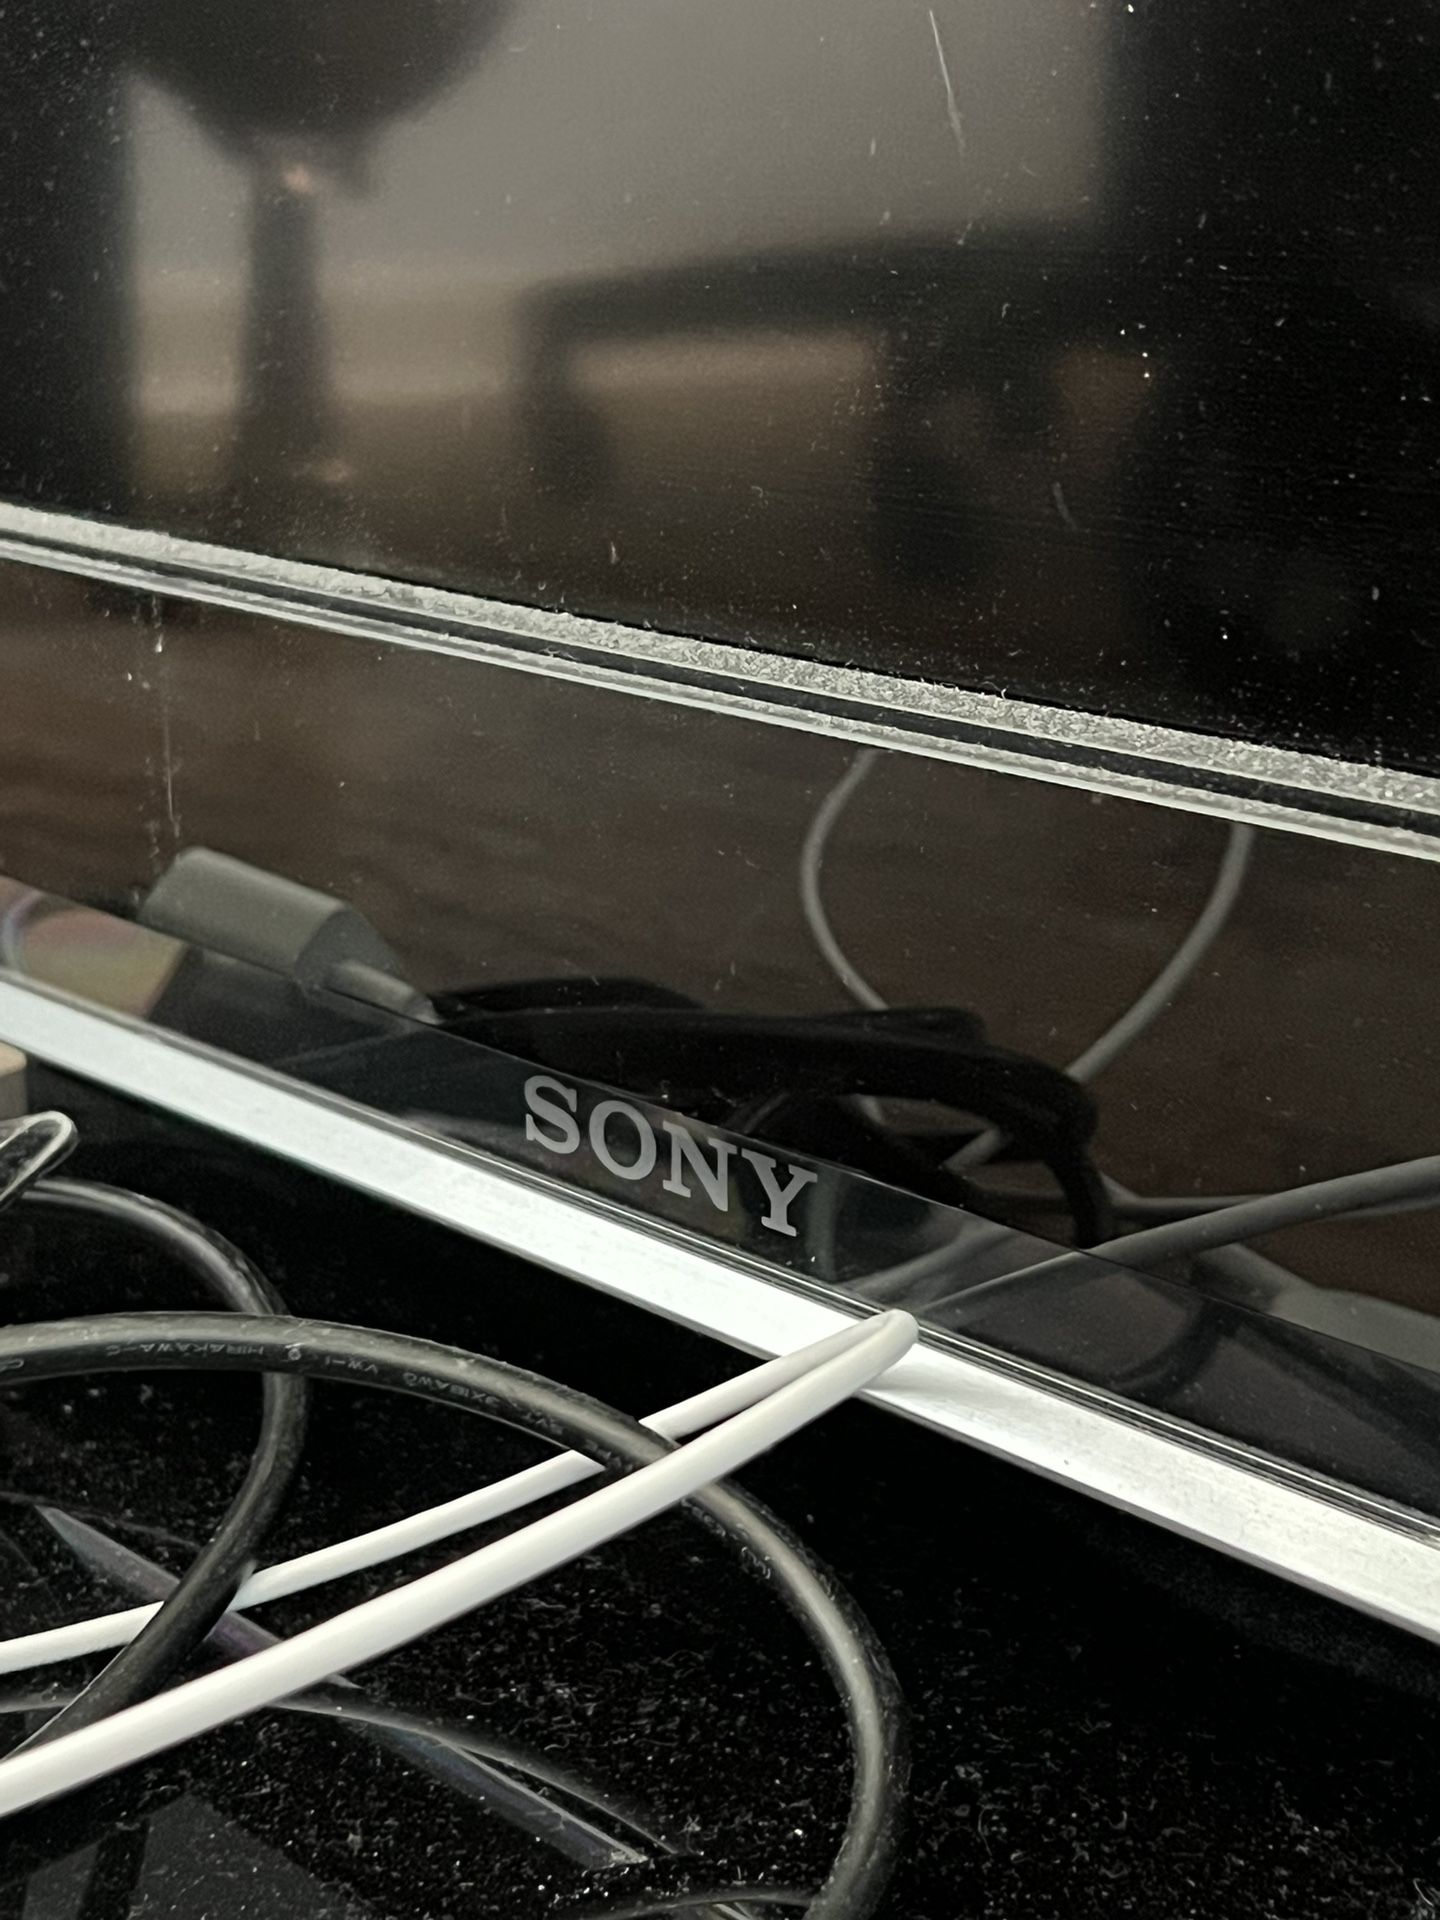 Sony 45 inch LCD TV